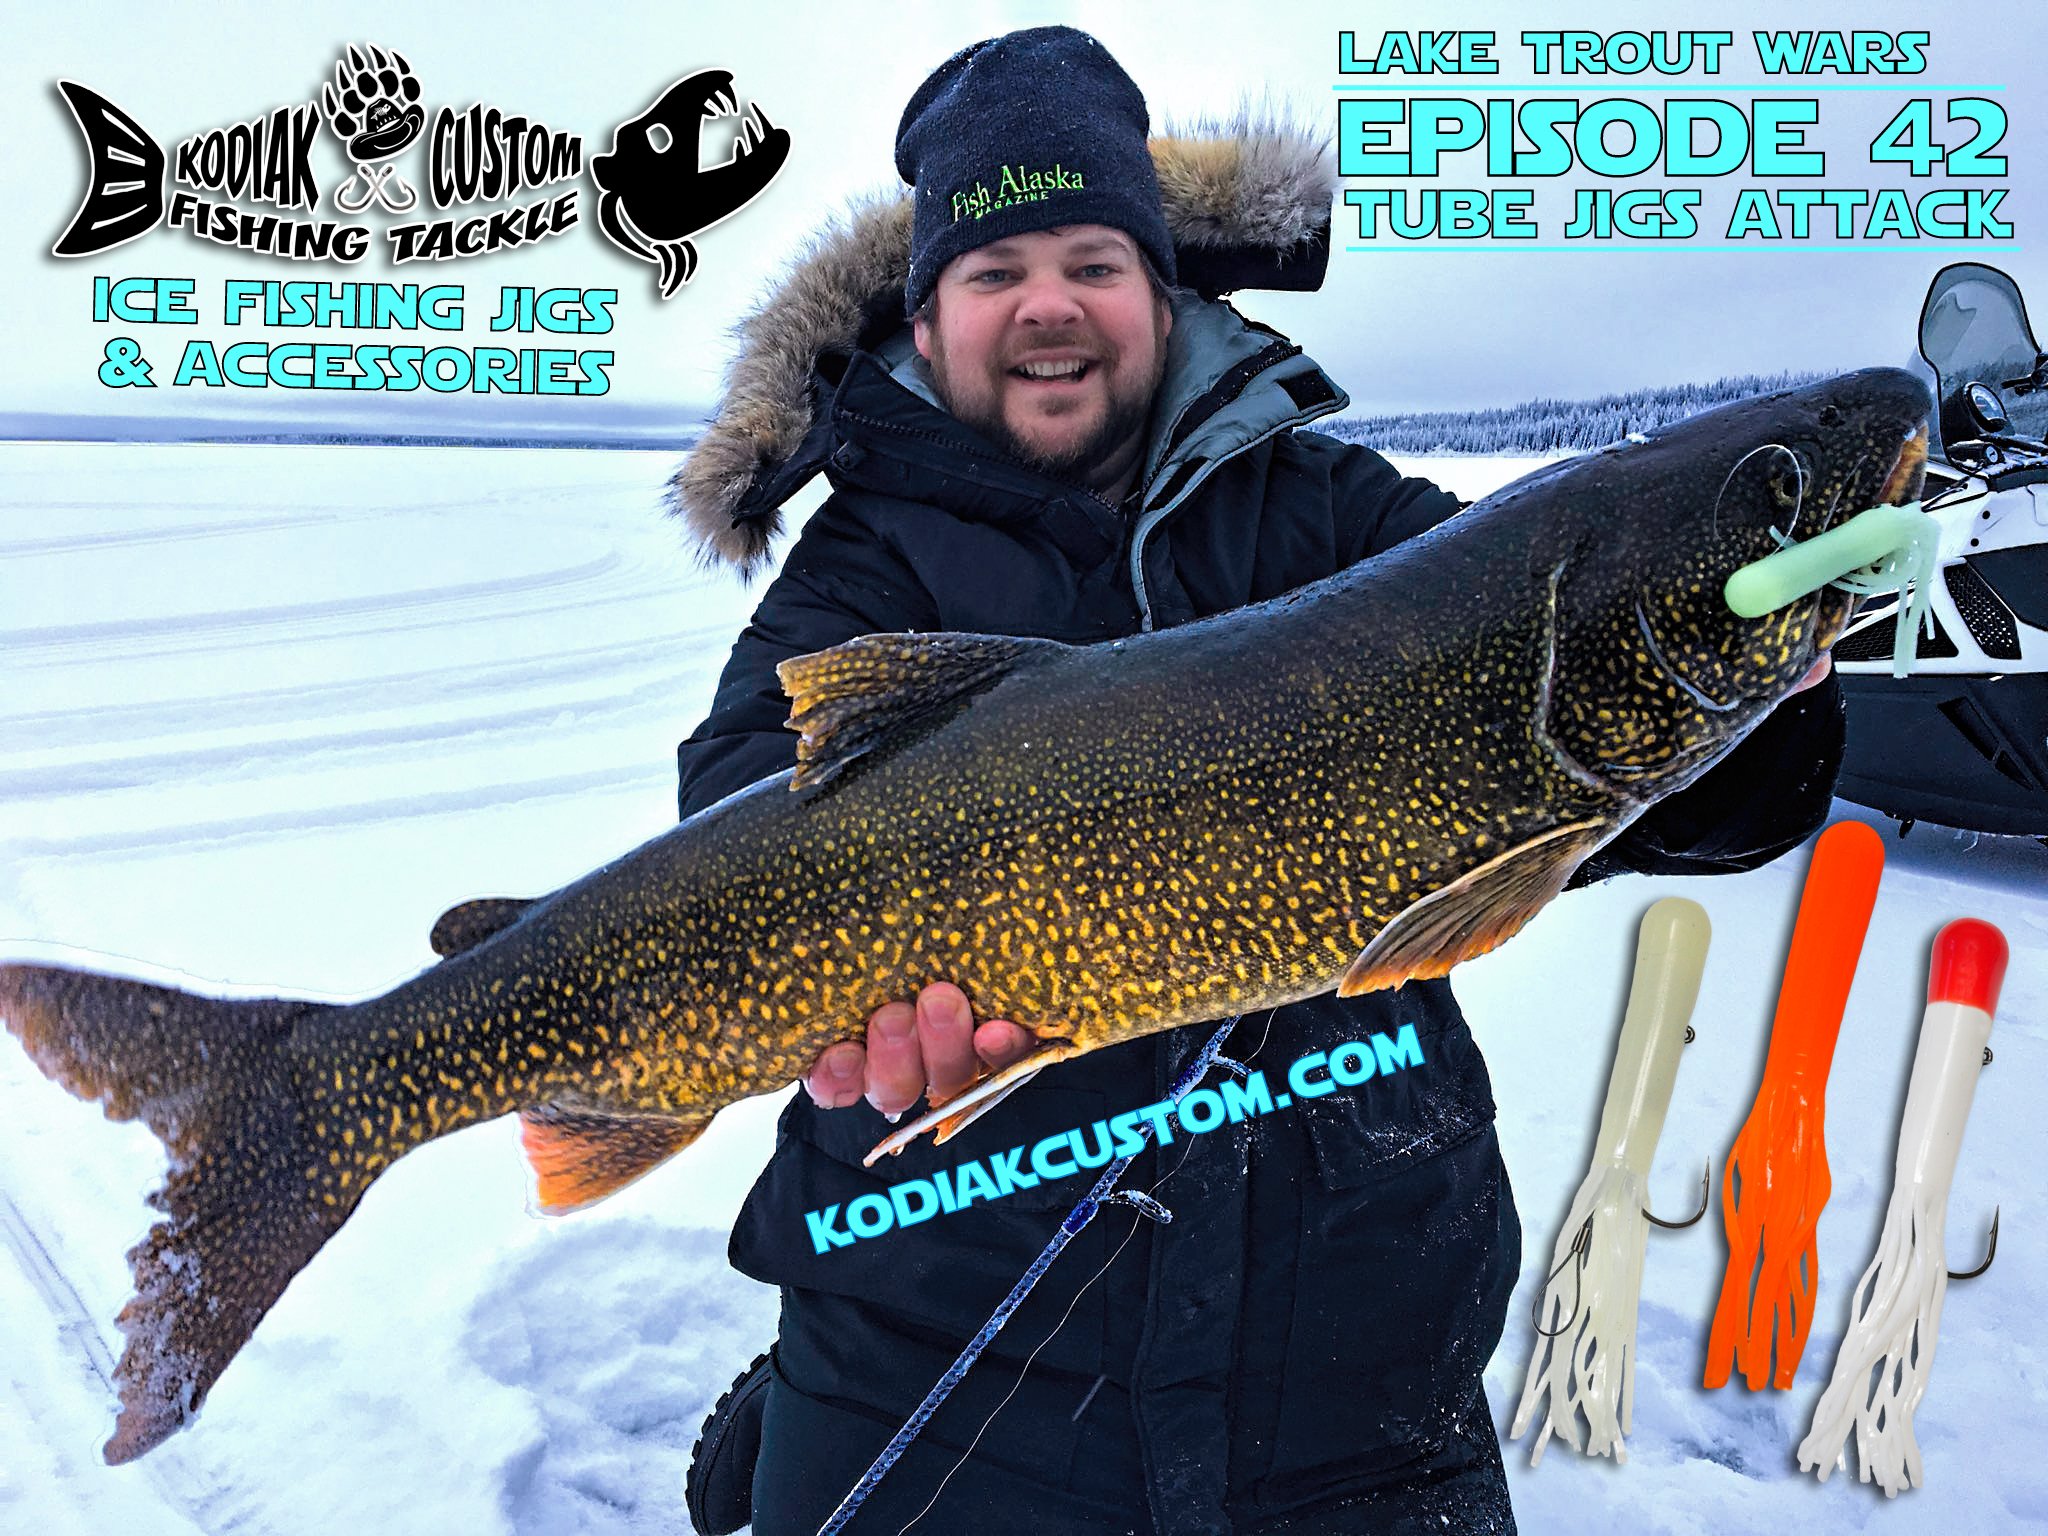 Kodiak Custom Fishing Tackle on X: @Kodiakcustom Lake Trout Wars ~ Tube  Jigs Attack! #Alaska #laketrout #tubejigs #icefishing #hogpack  #FishAlaskaMagazine #famousdavis #hogs #trout #kodiakcustom  #alaskansalmonslayers #kcft #troutfishing #hardwater